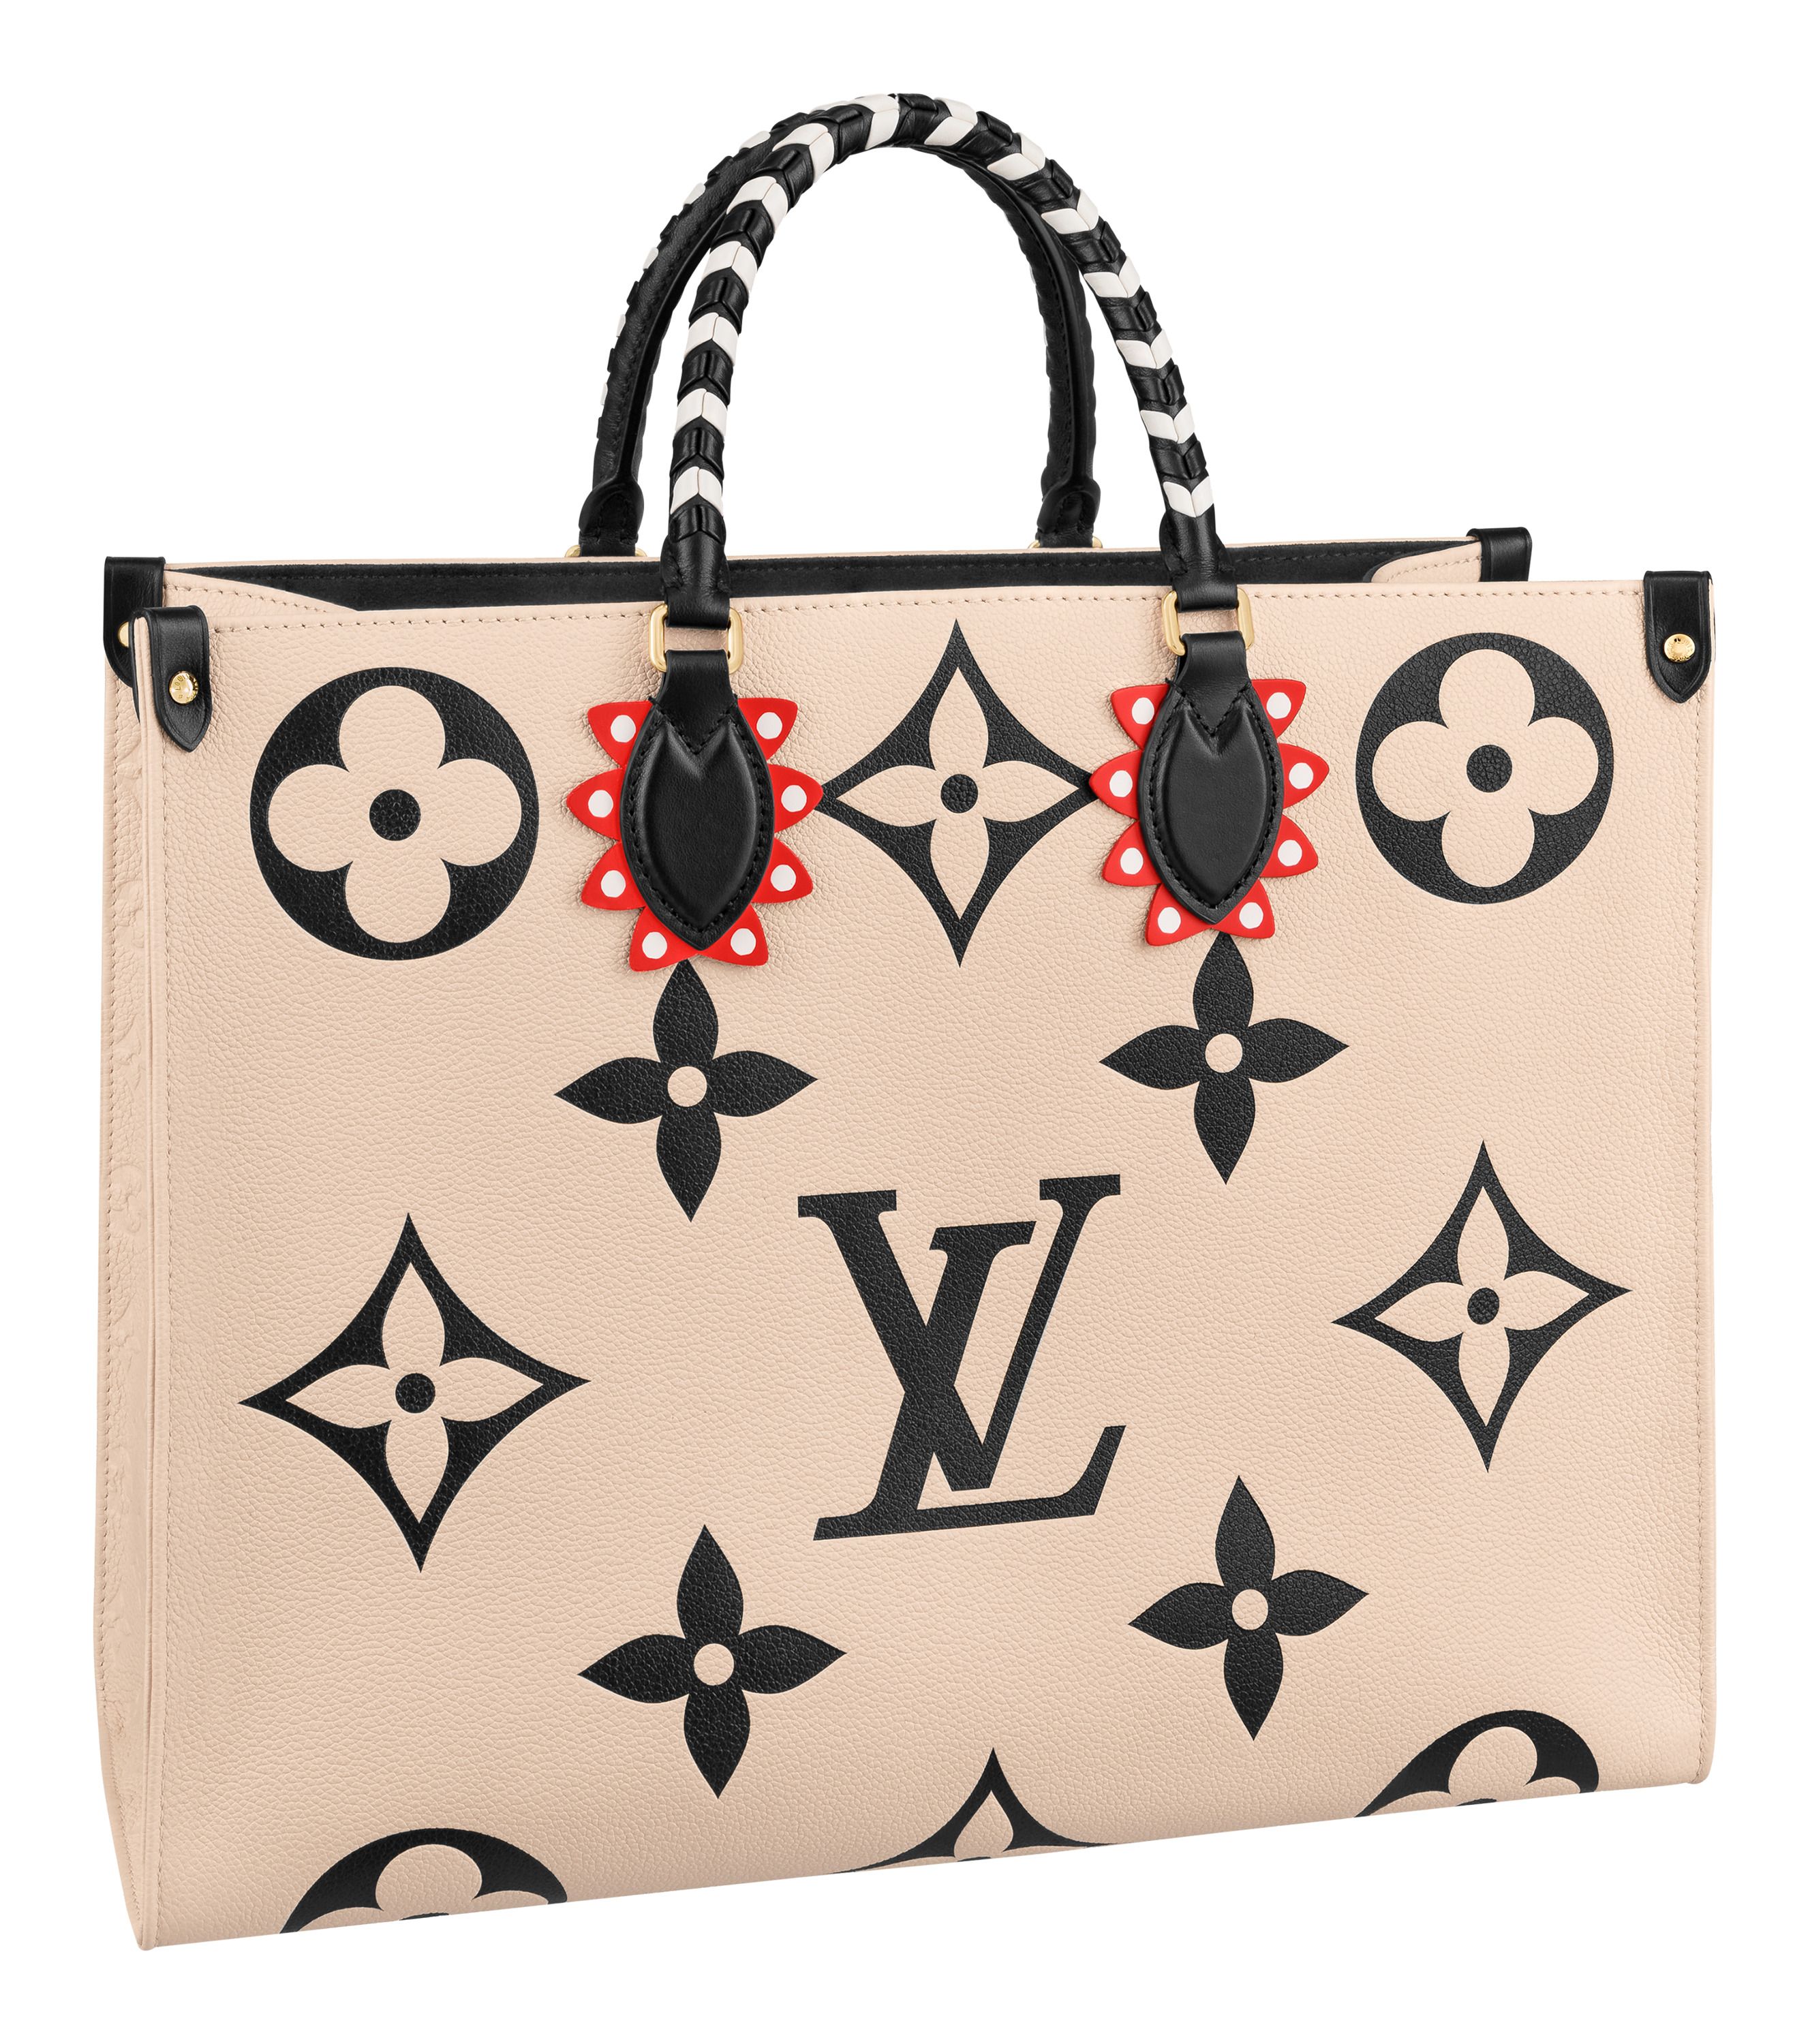 ルイ・ヴィトン」の新作バッグはグラフィカルな「LV クラフティ」